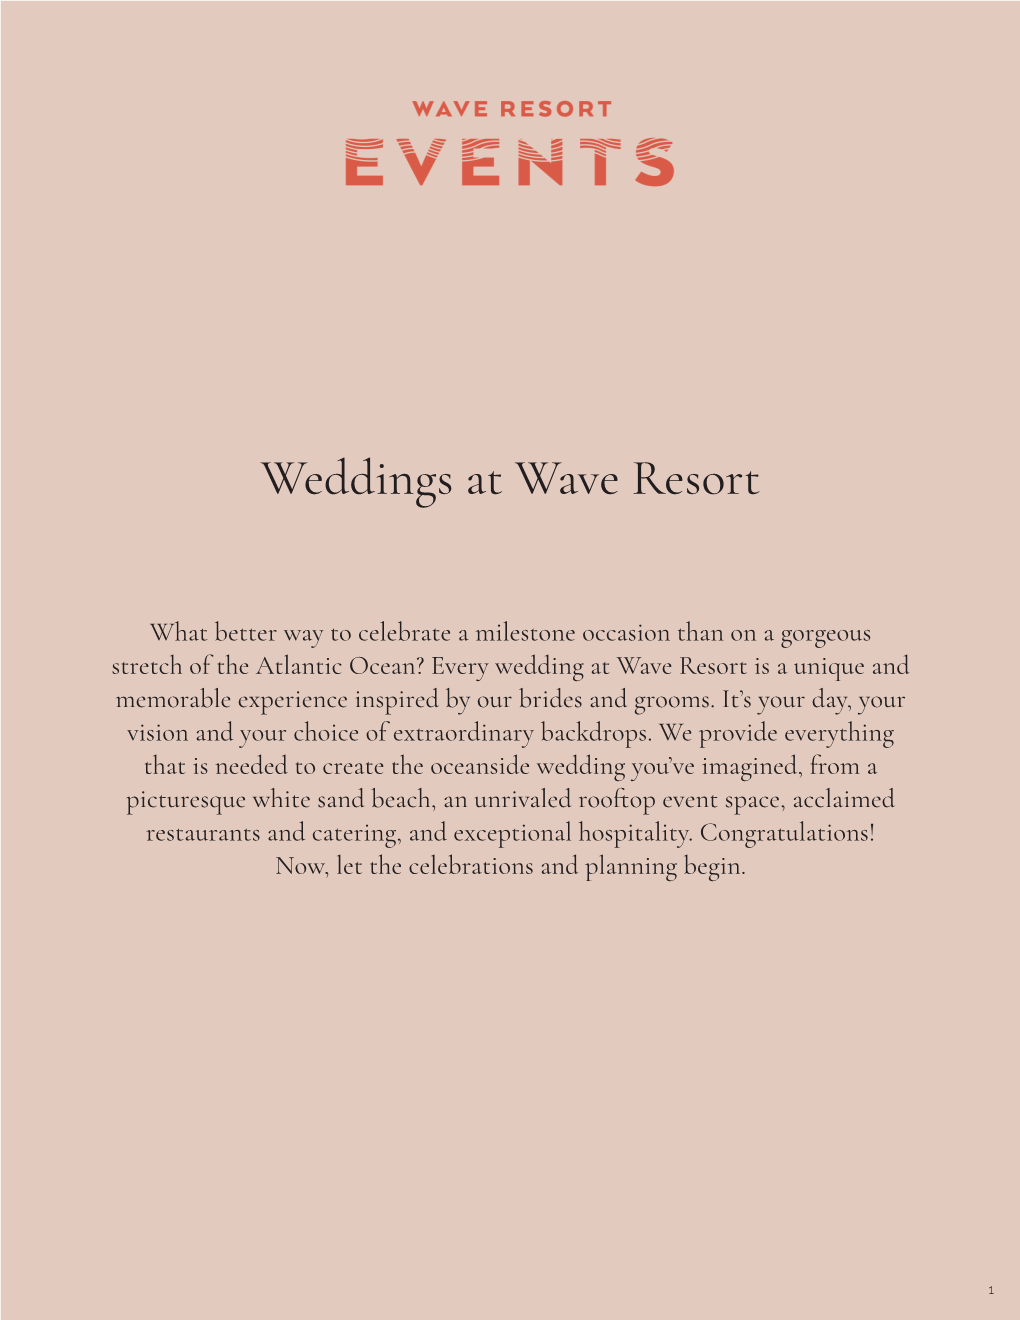 Weddings at Wave Resort